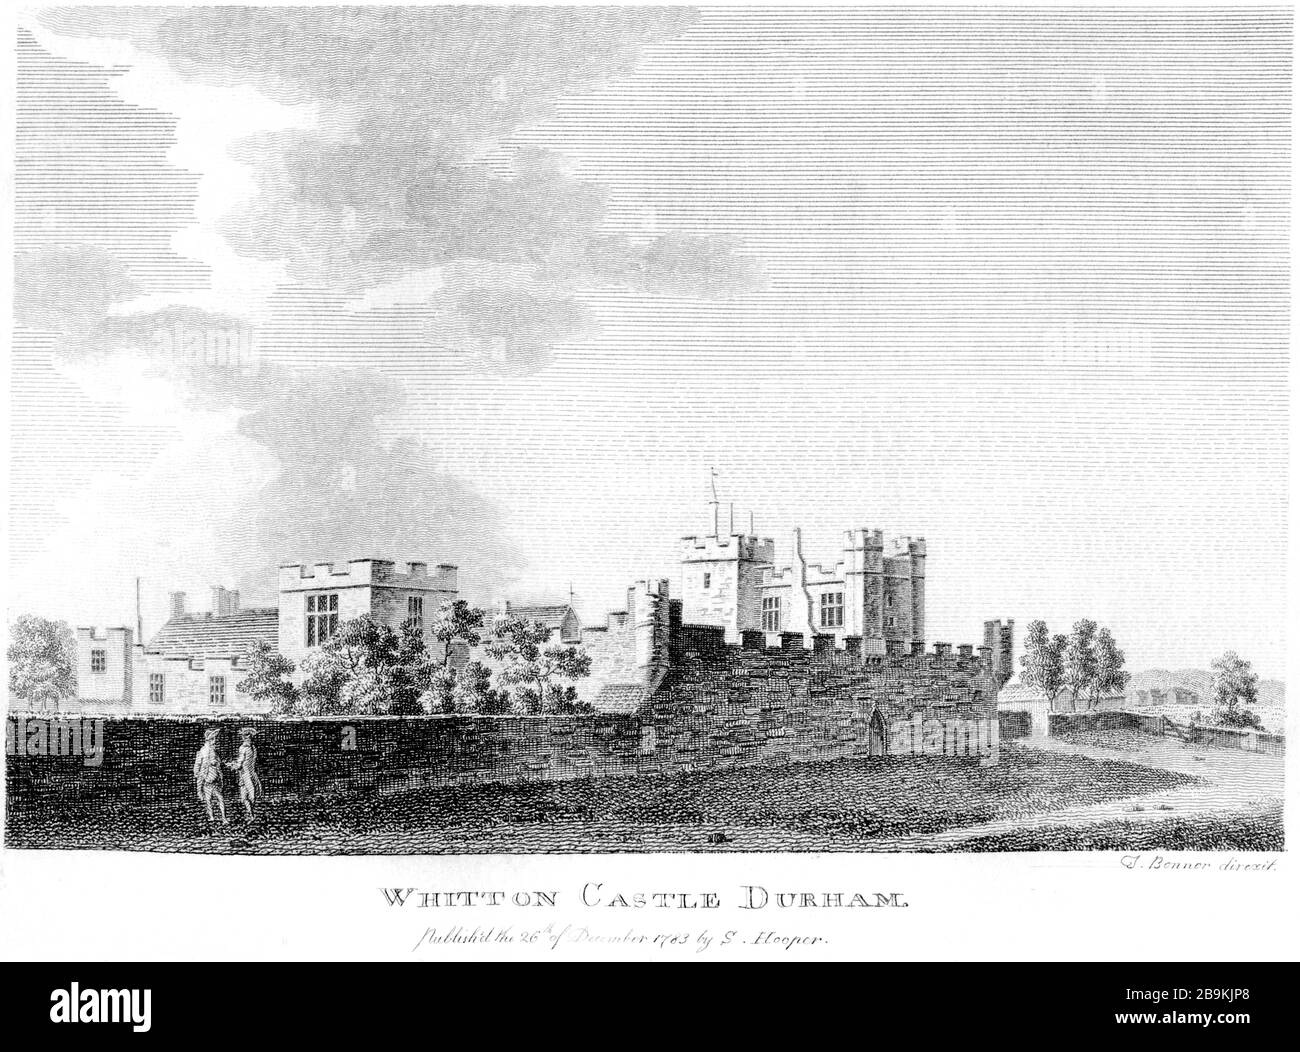 Une gravure du château de Whitton (Witton) Durham 1783 a été numérisée en haute résolution à partir d'un livre publié vers 1786. Considéré comme libre de droits d'auteur. Banque D'Images